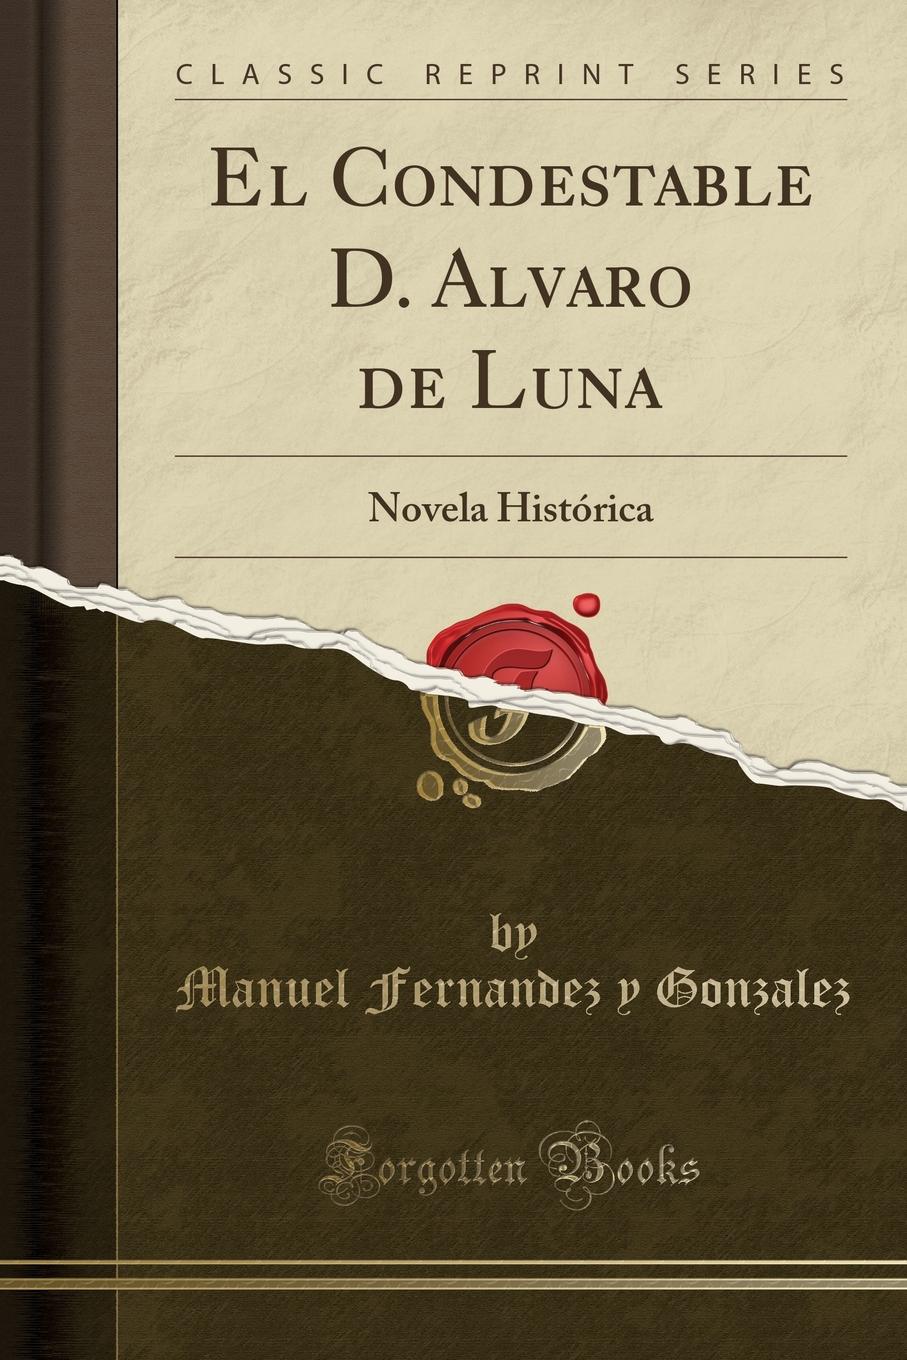 El Condestable D. Alvaro de Luna. Novela Historica (Classic Reprint)